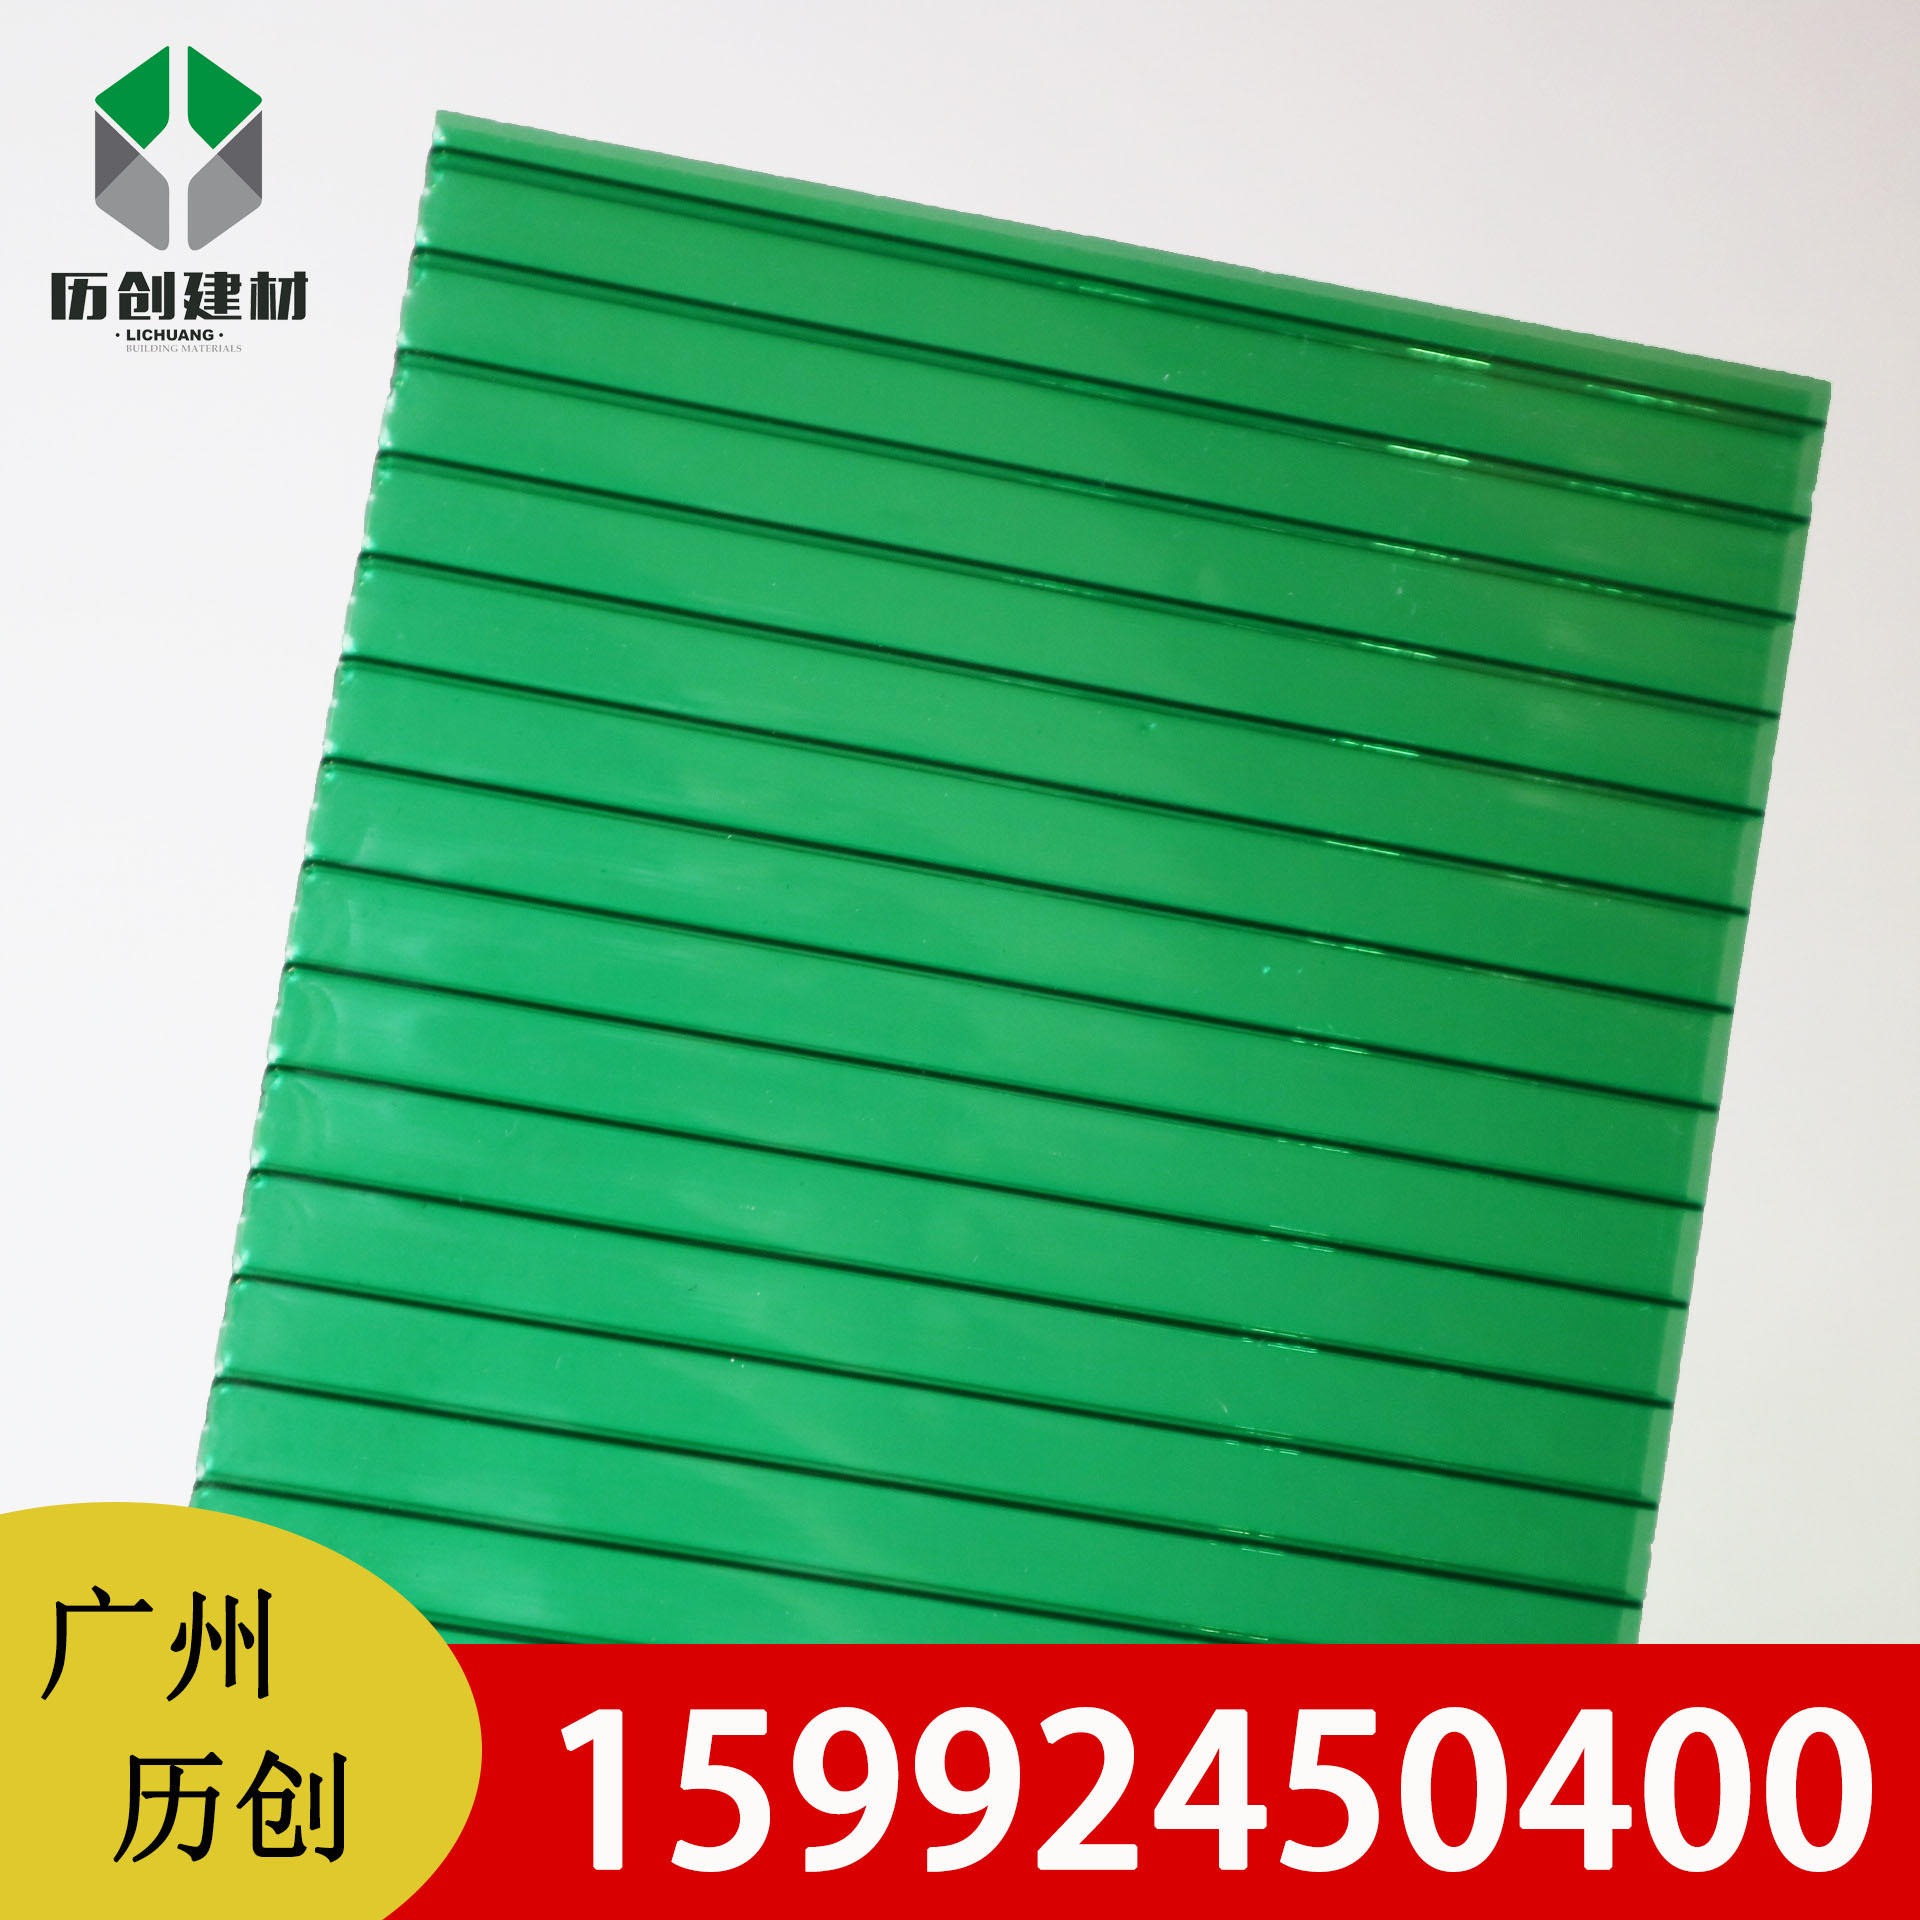 河北阳光板 双层12mm绿色PC阳光板 中空板广告牌 阳光花房 透光性佳 厂家直销